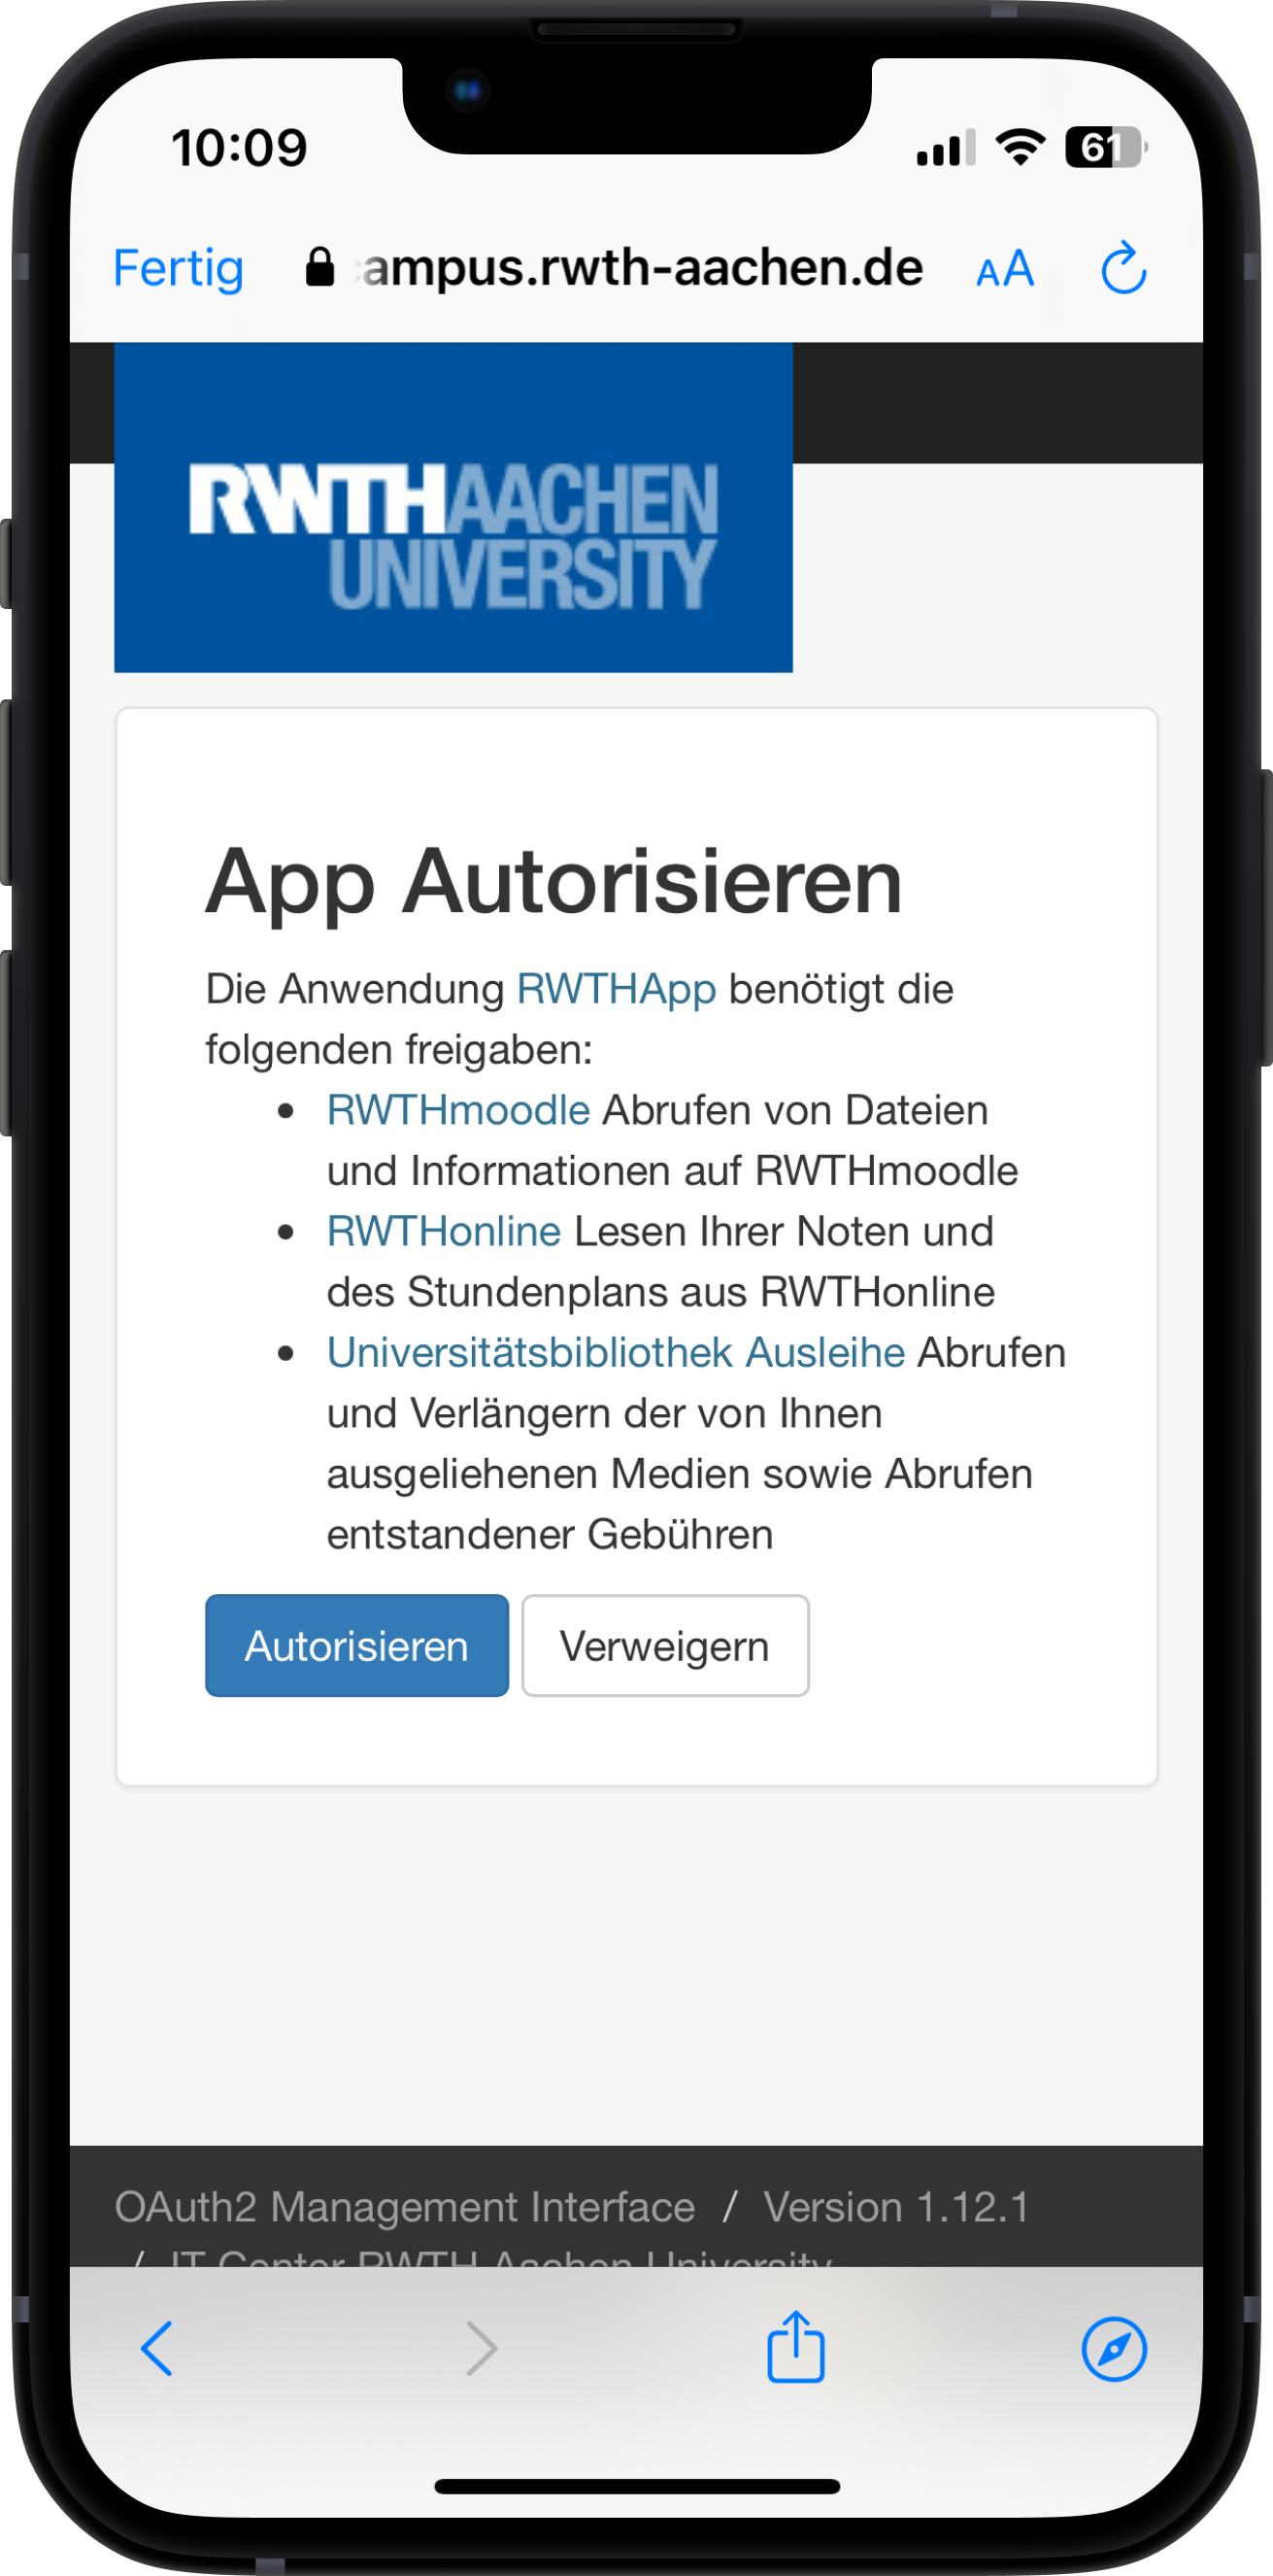 Screenshot der Autorisierungsseite. Unter "App Autorisieren" werden die benötigten Autorisierungen aufgelistet. Sie können " Autorisieren " oder " Verweigern " auswählen.